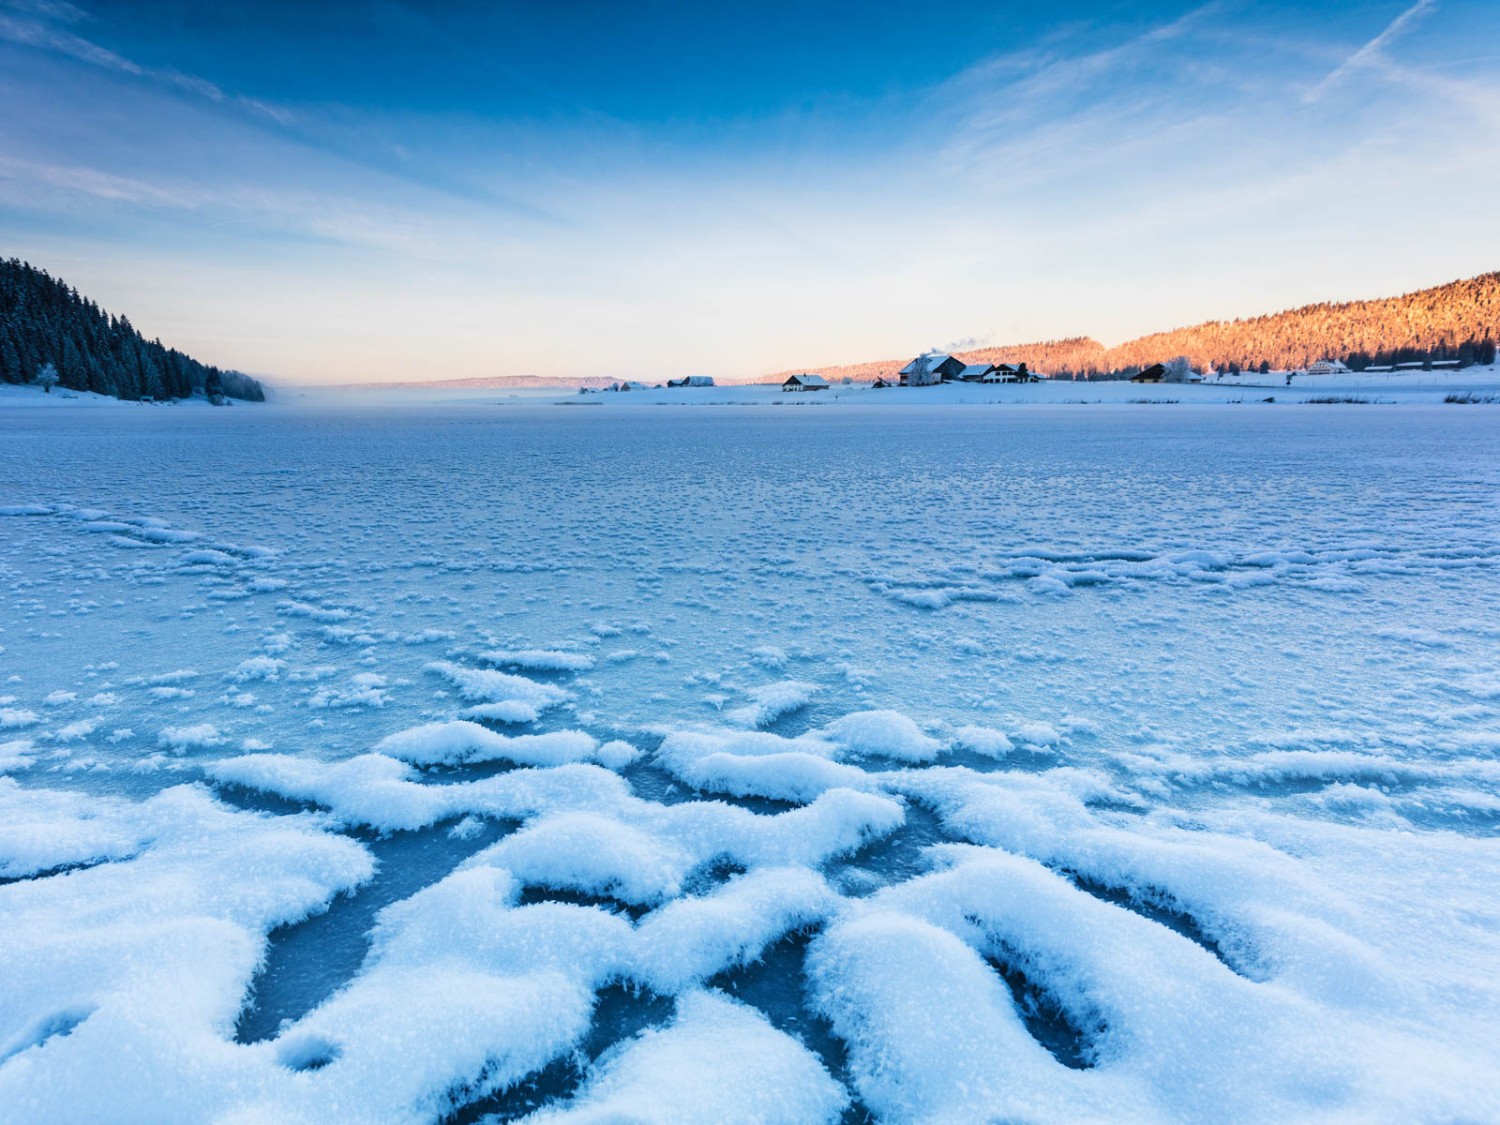 Man kann hier durchaus arktische Bedingungen erleben. Bild: Vincent Bourrut